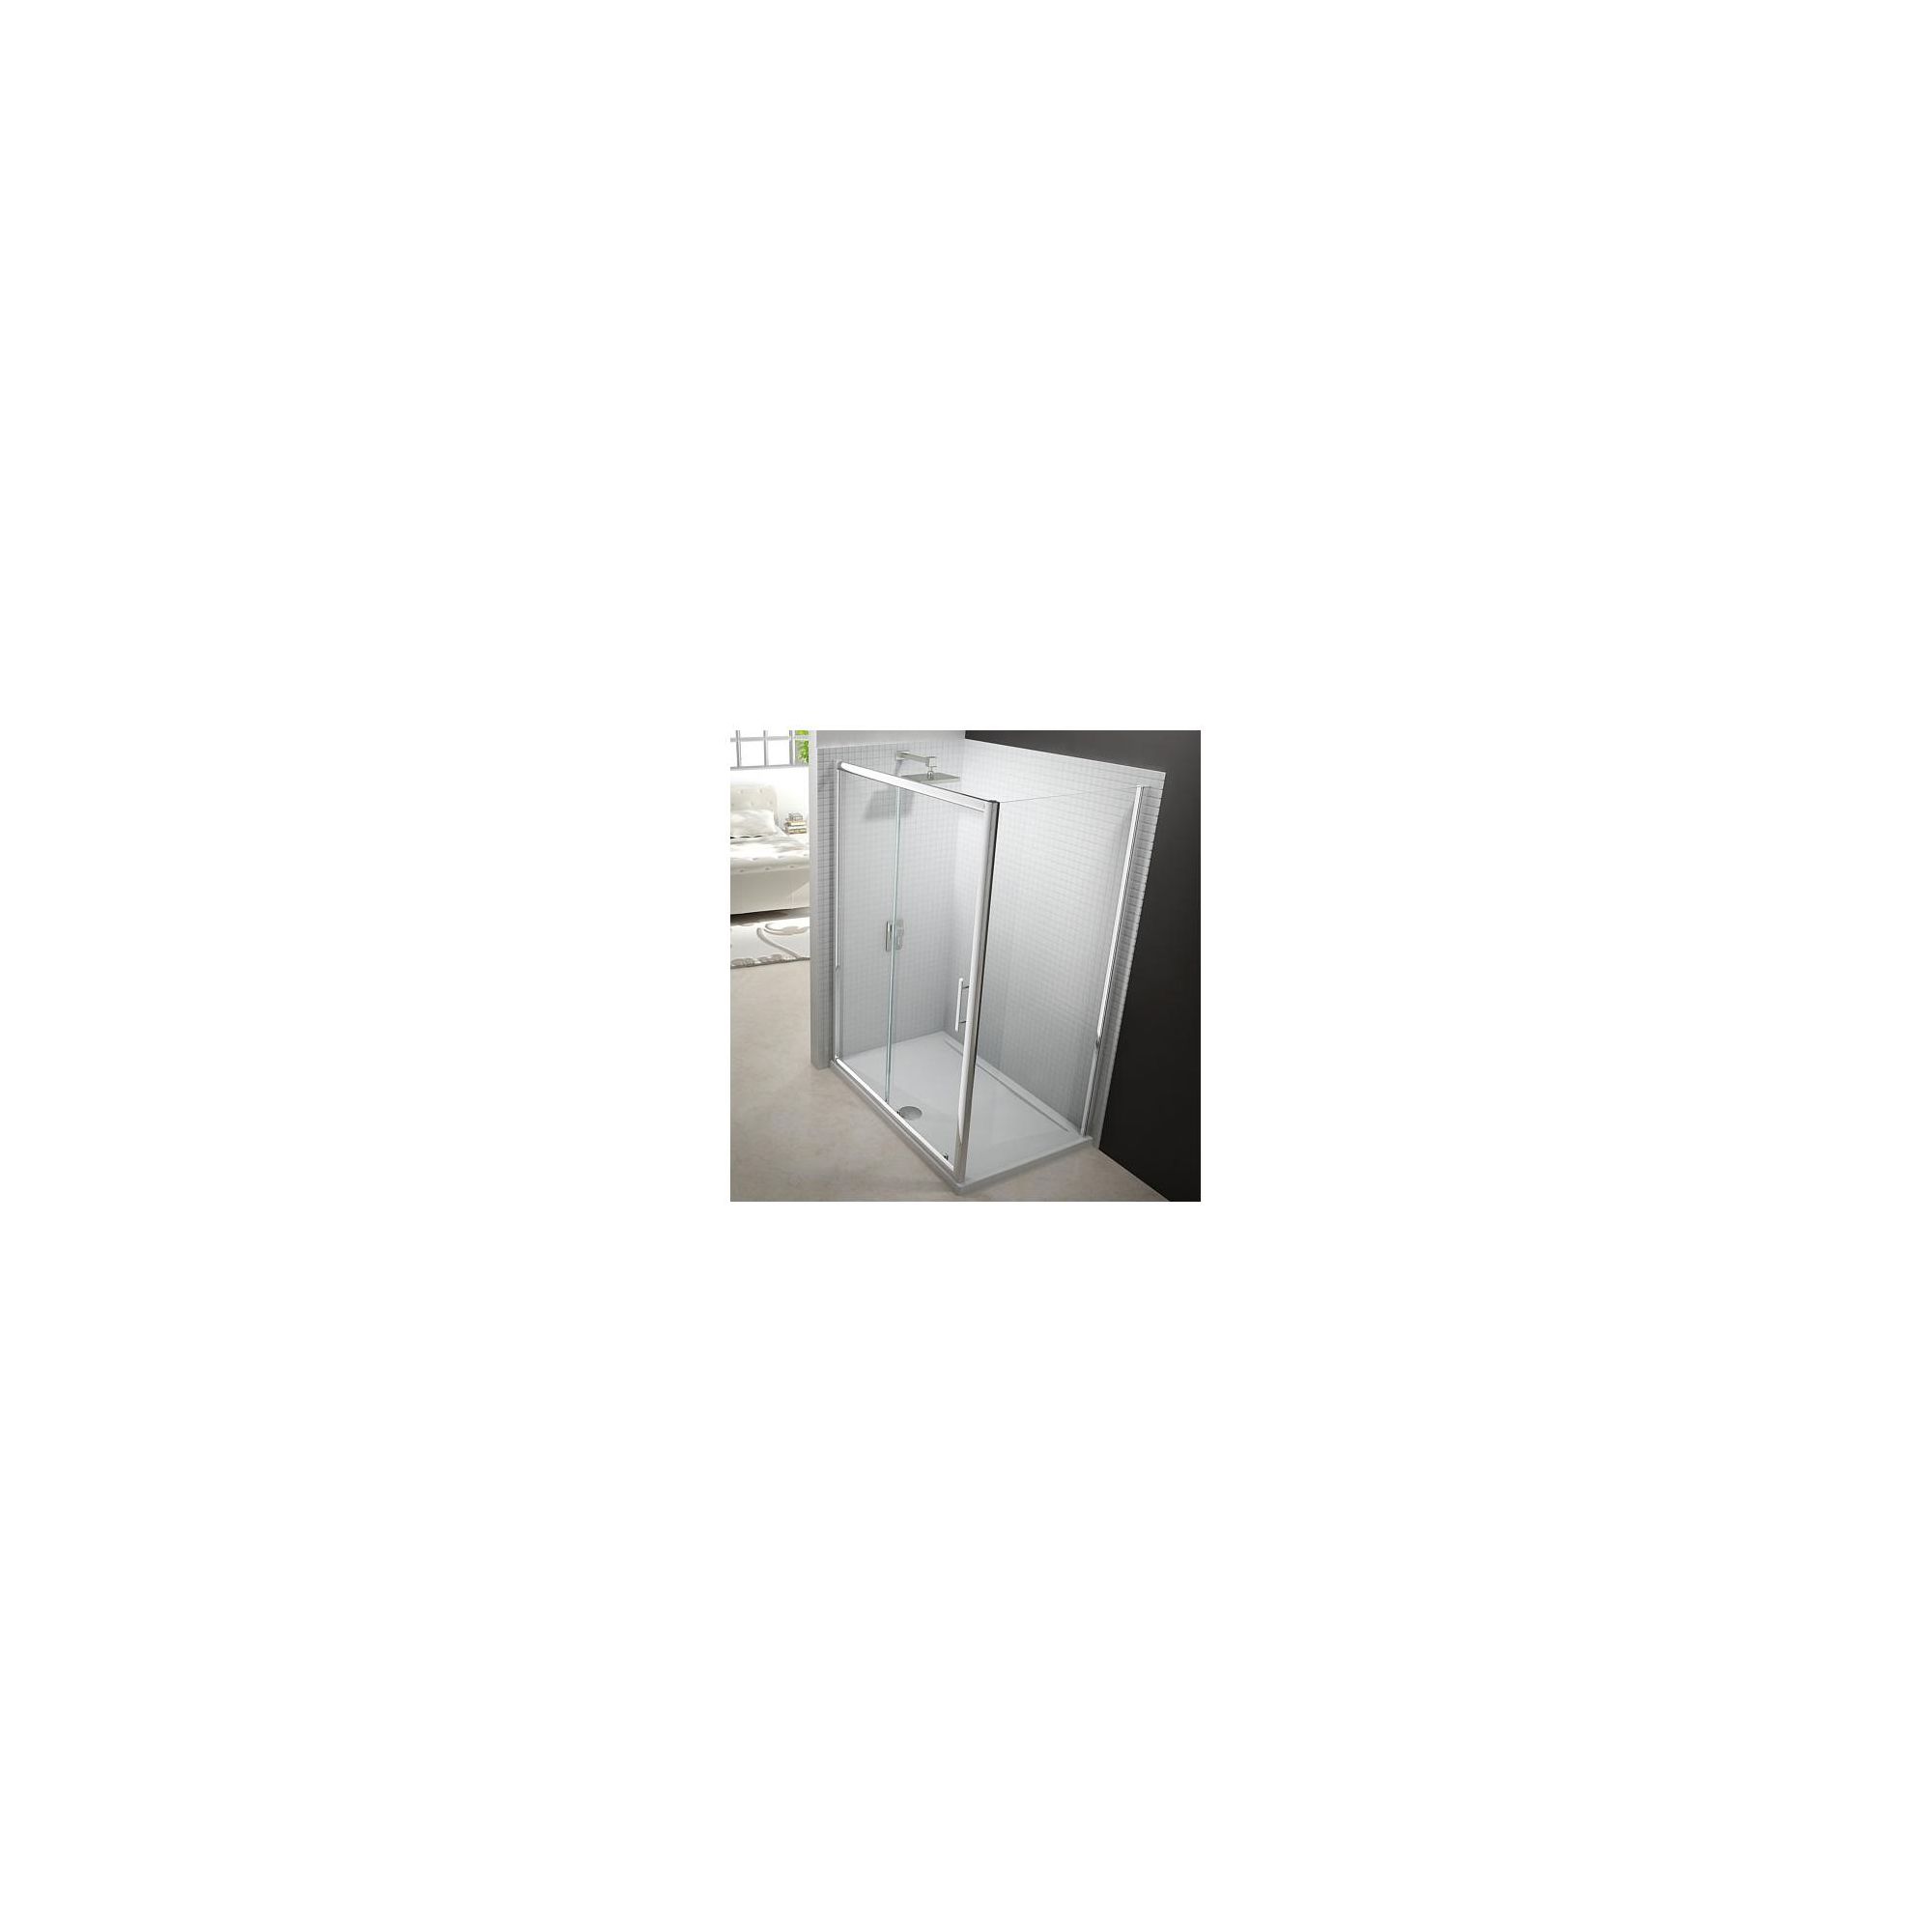 Merlyn Series 6 Sliding Shower Door, 1500mm Wide, Chrome Frame, 6mm Glass at Tesco Direct